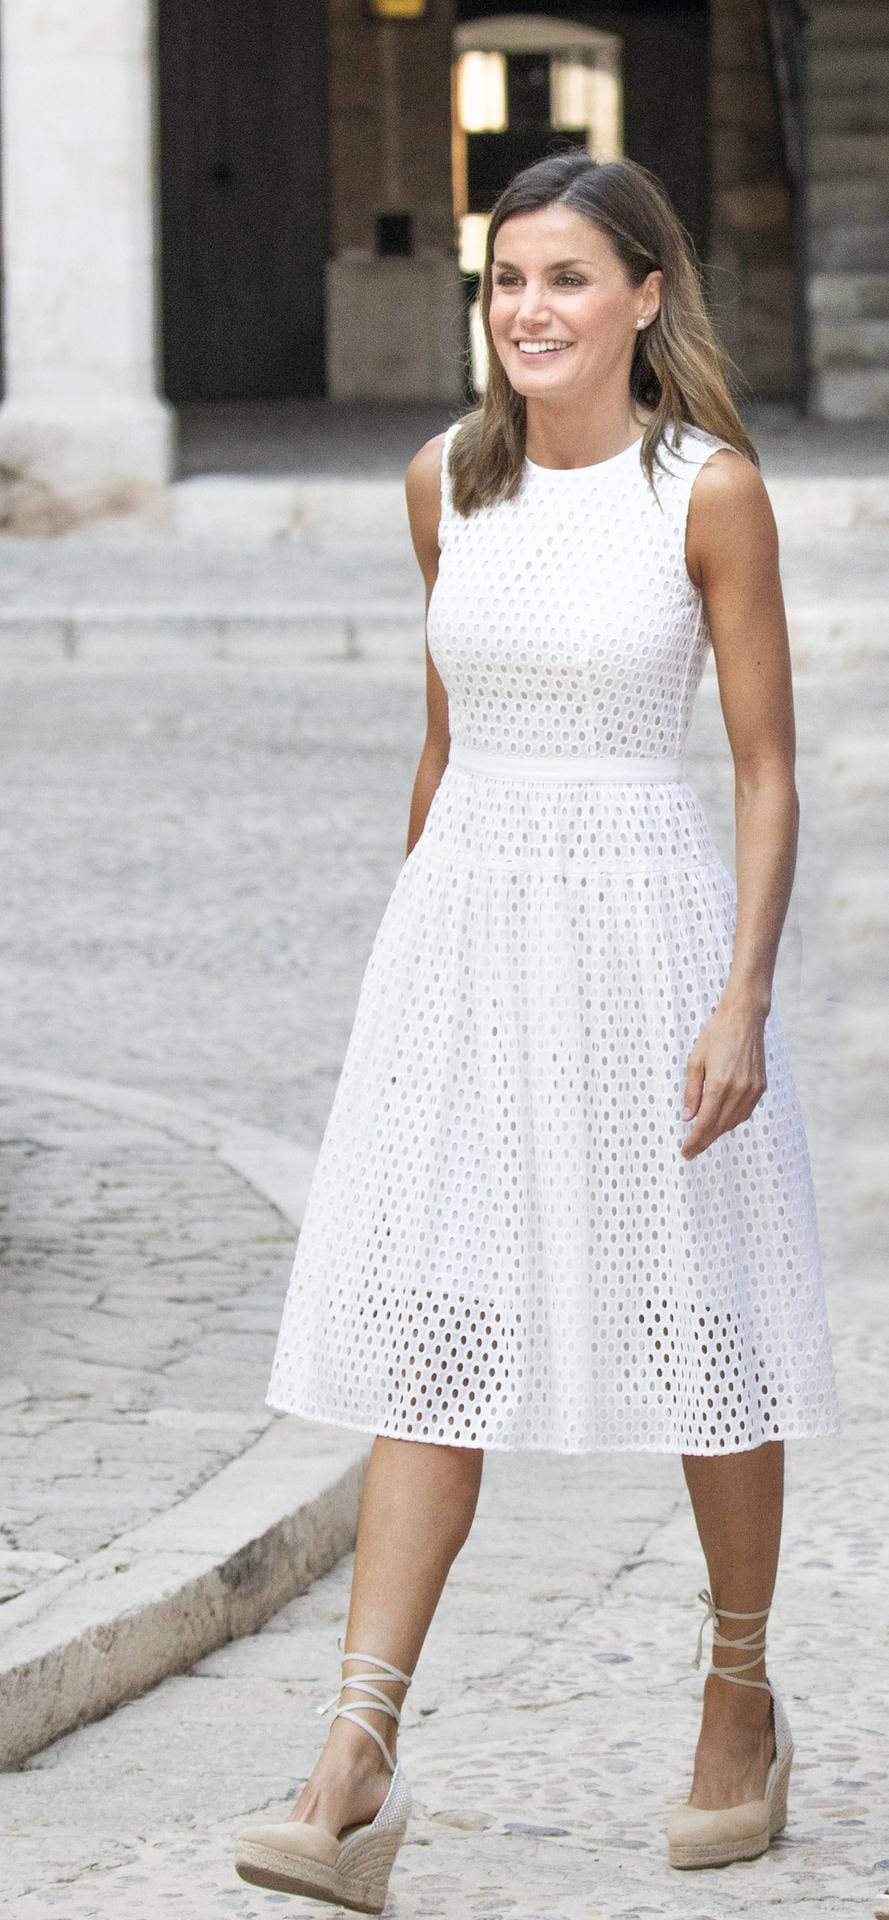 Sommerlicher Look: Königin Letizia zeigt sich in einem weißen Kleid mit nudefarbenen Espadrilles.